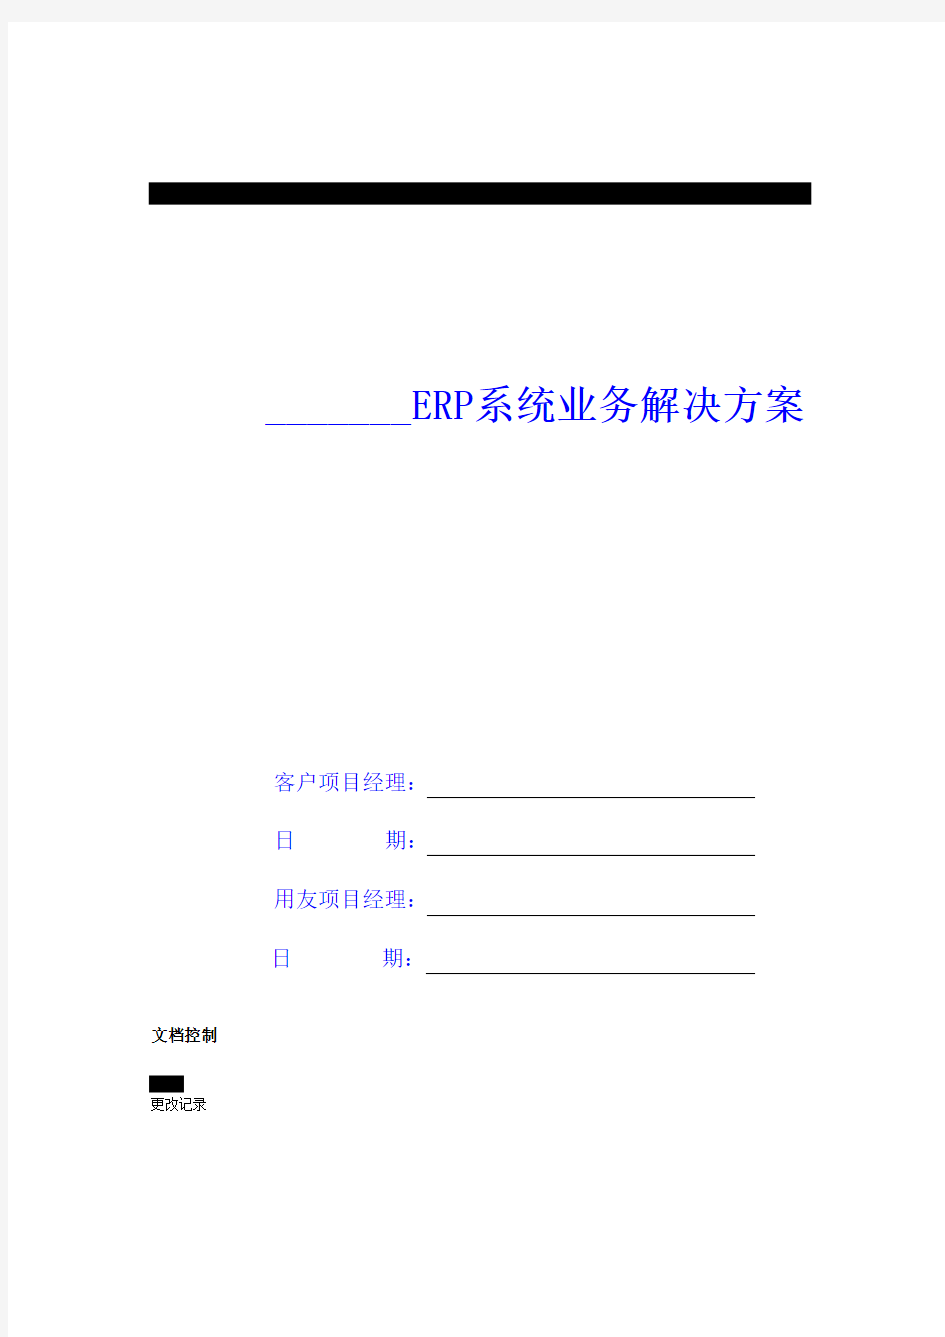 ERP信息管理系统及库存管理